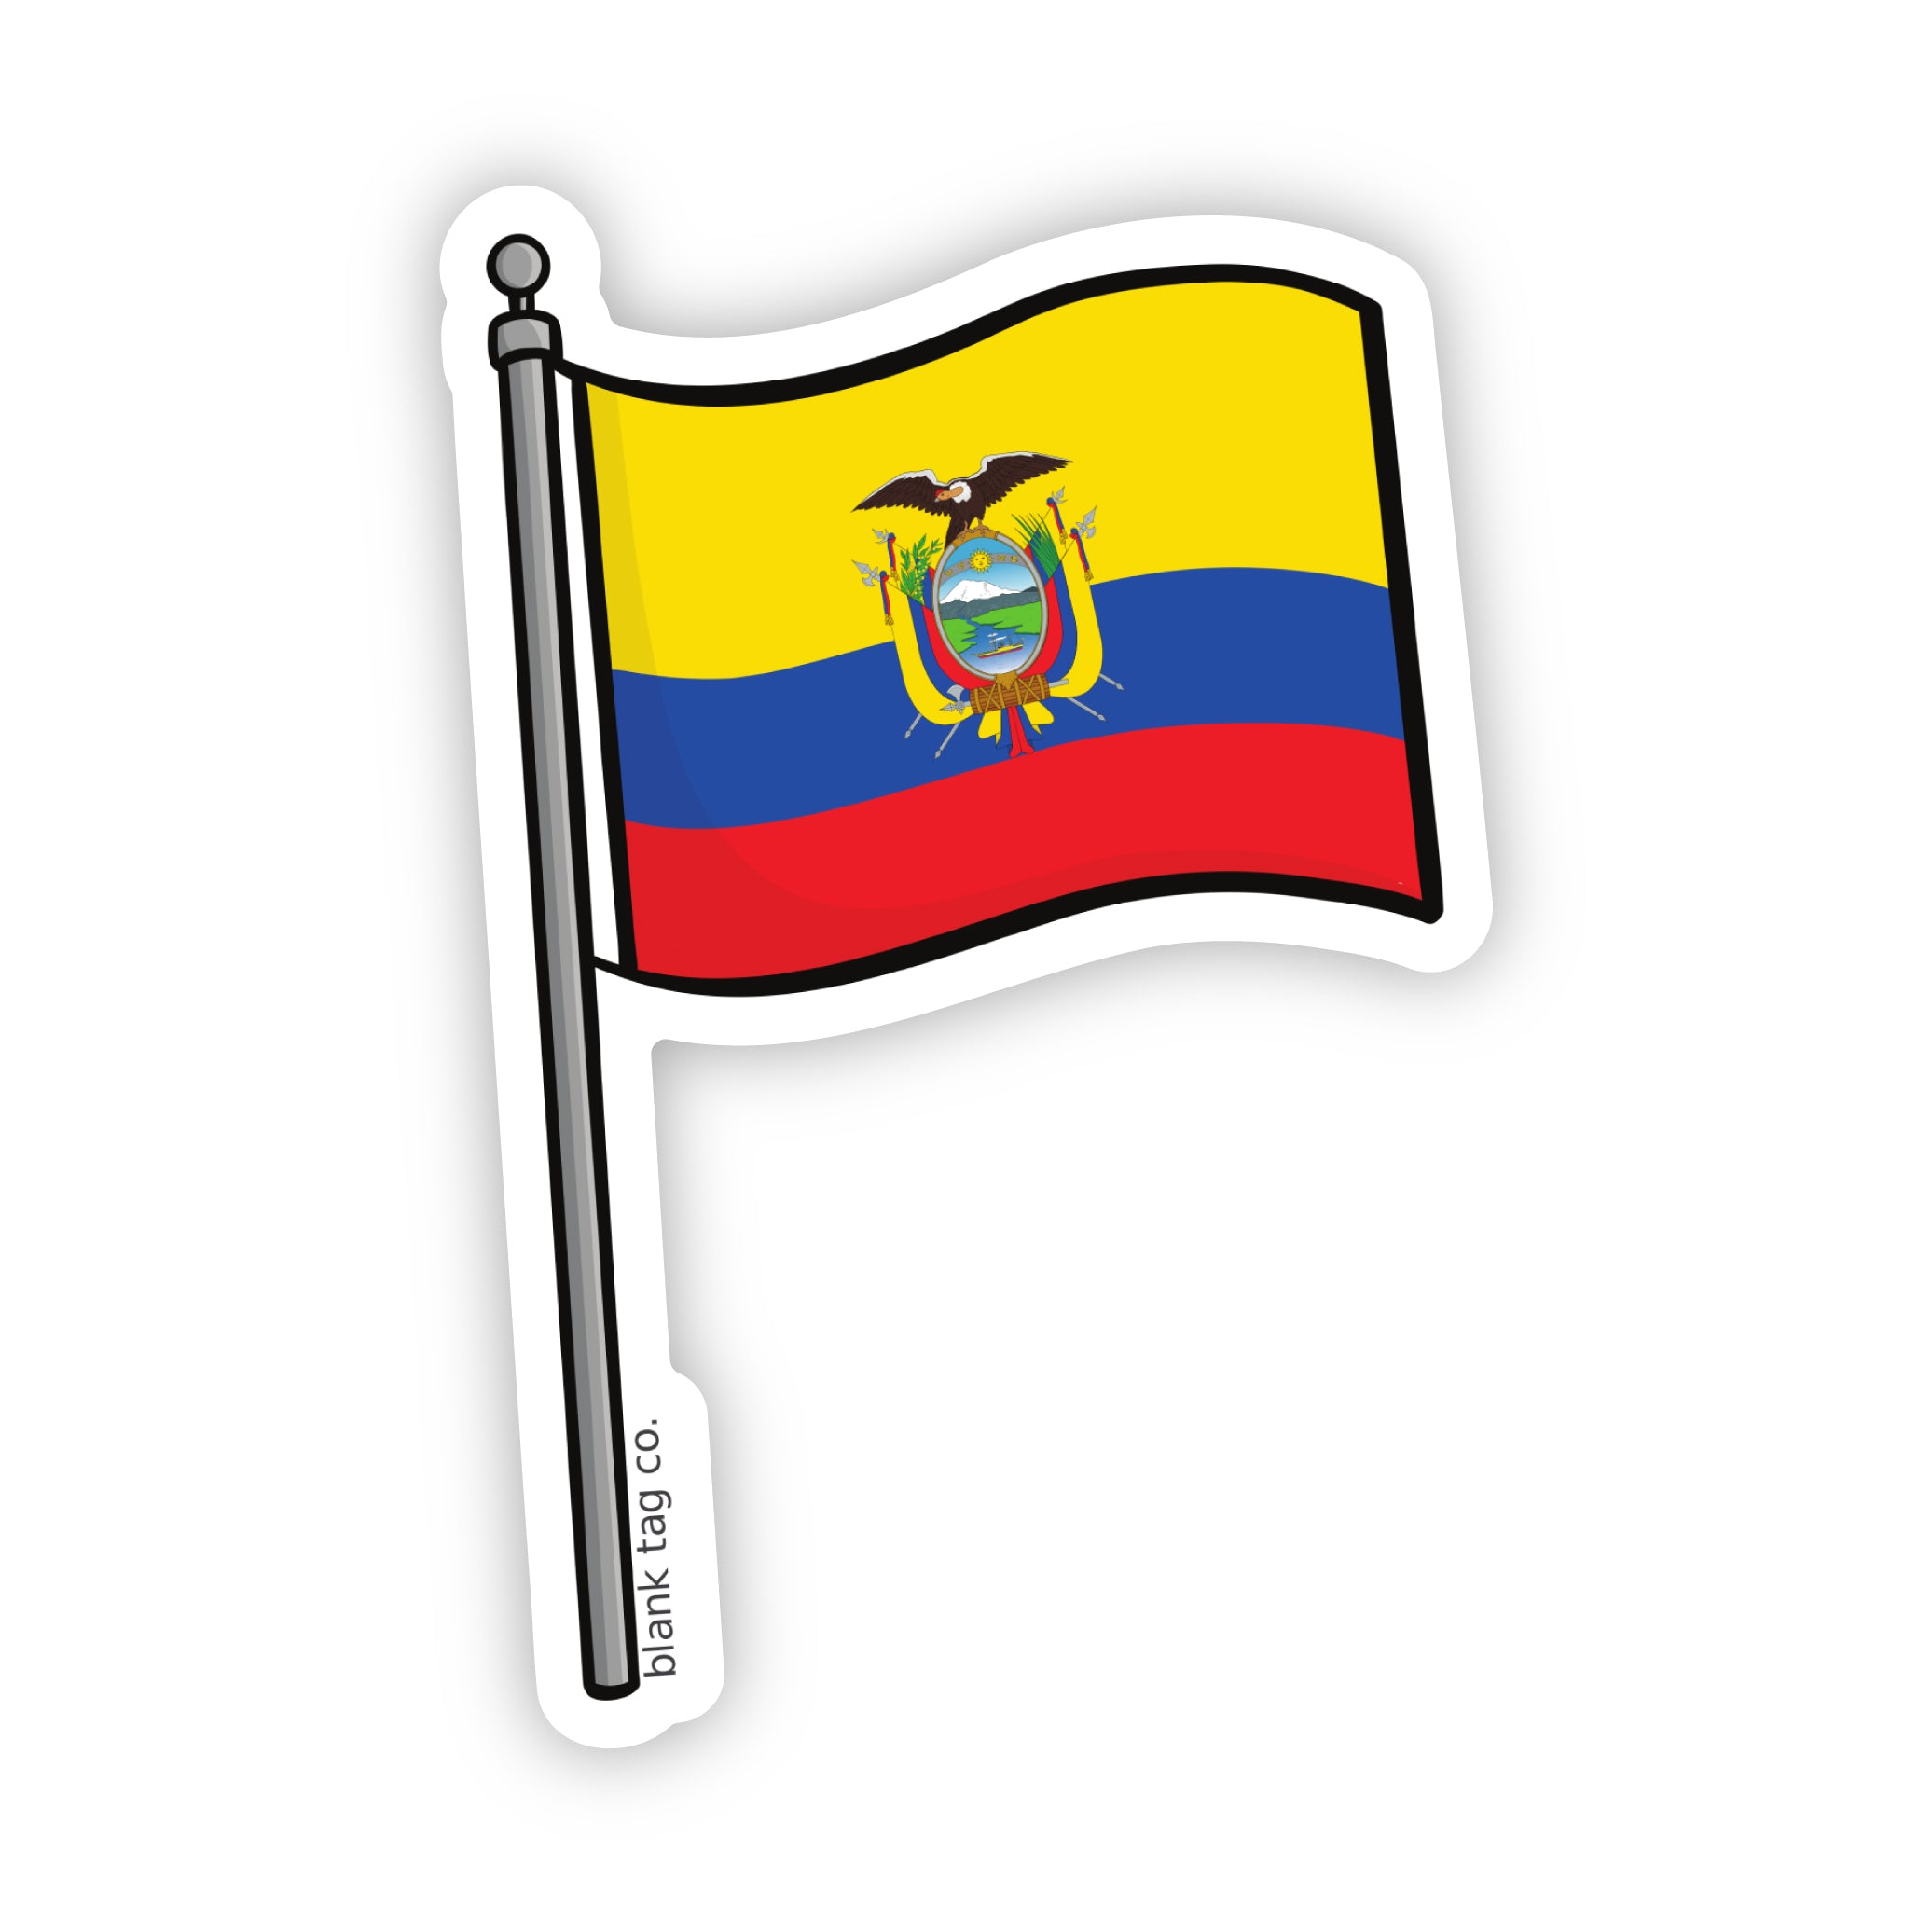 The Ecuador Flag Sticker